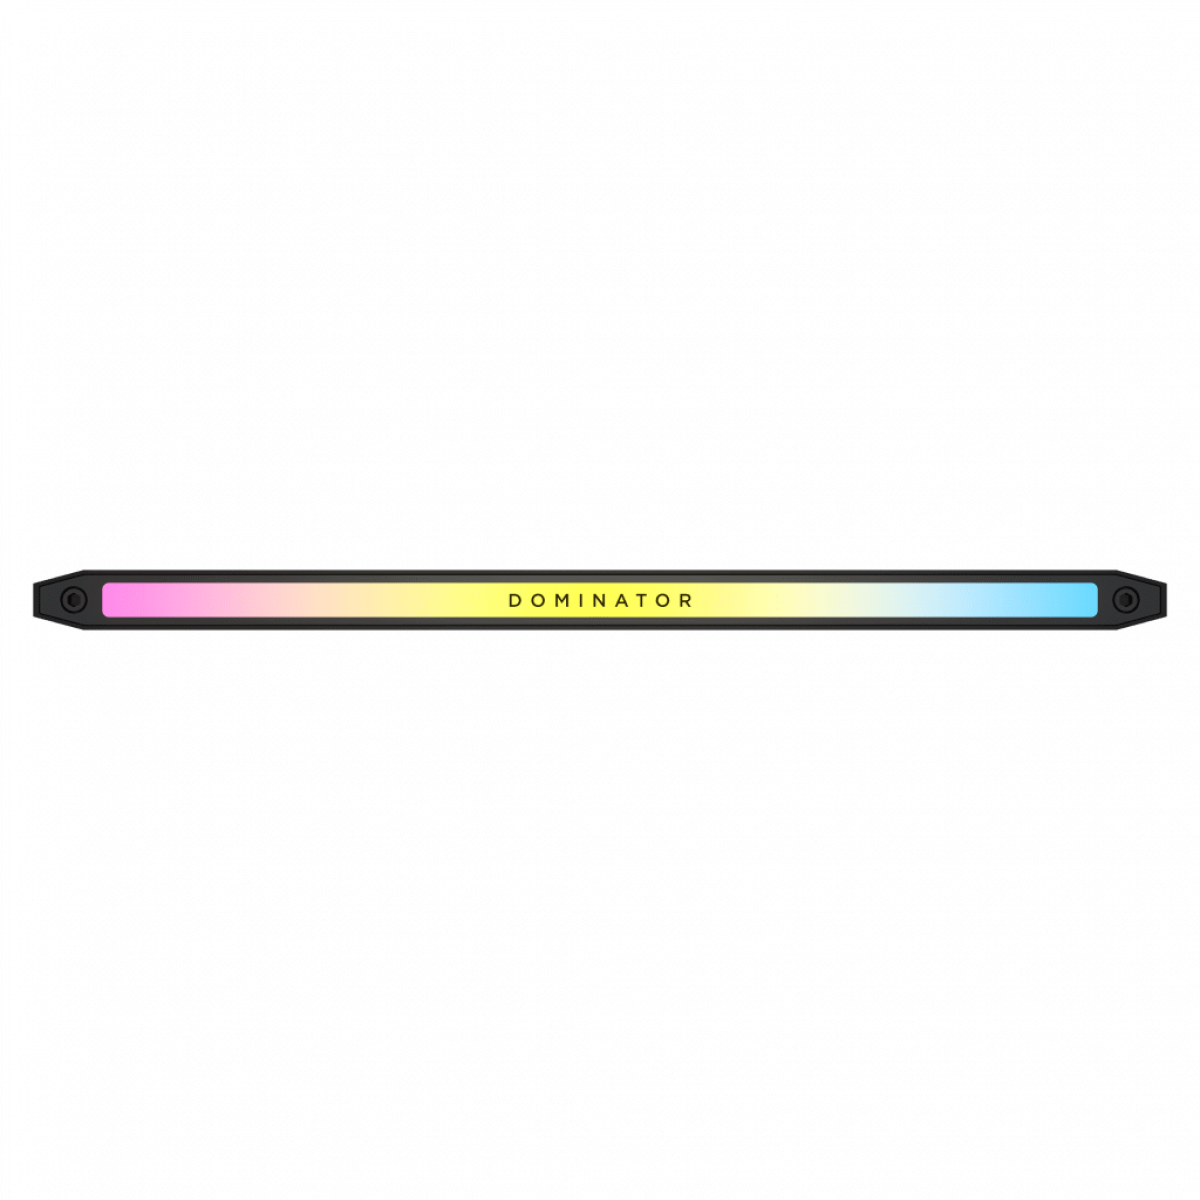 RAM DOMINATOR TITANIUM Black HeatspreaderDDR5, 7200MT/s 48GB 2x24GB DIMM, XMP 3.0, RGB LED, 1.4V